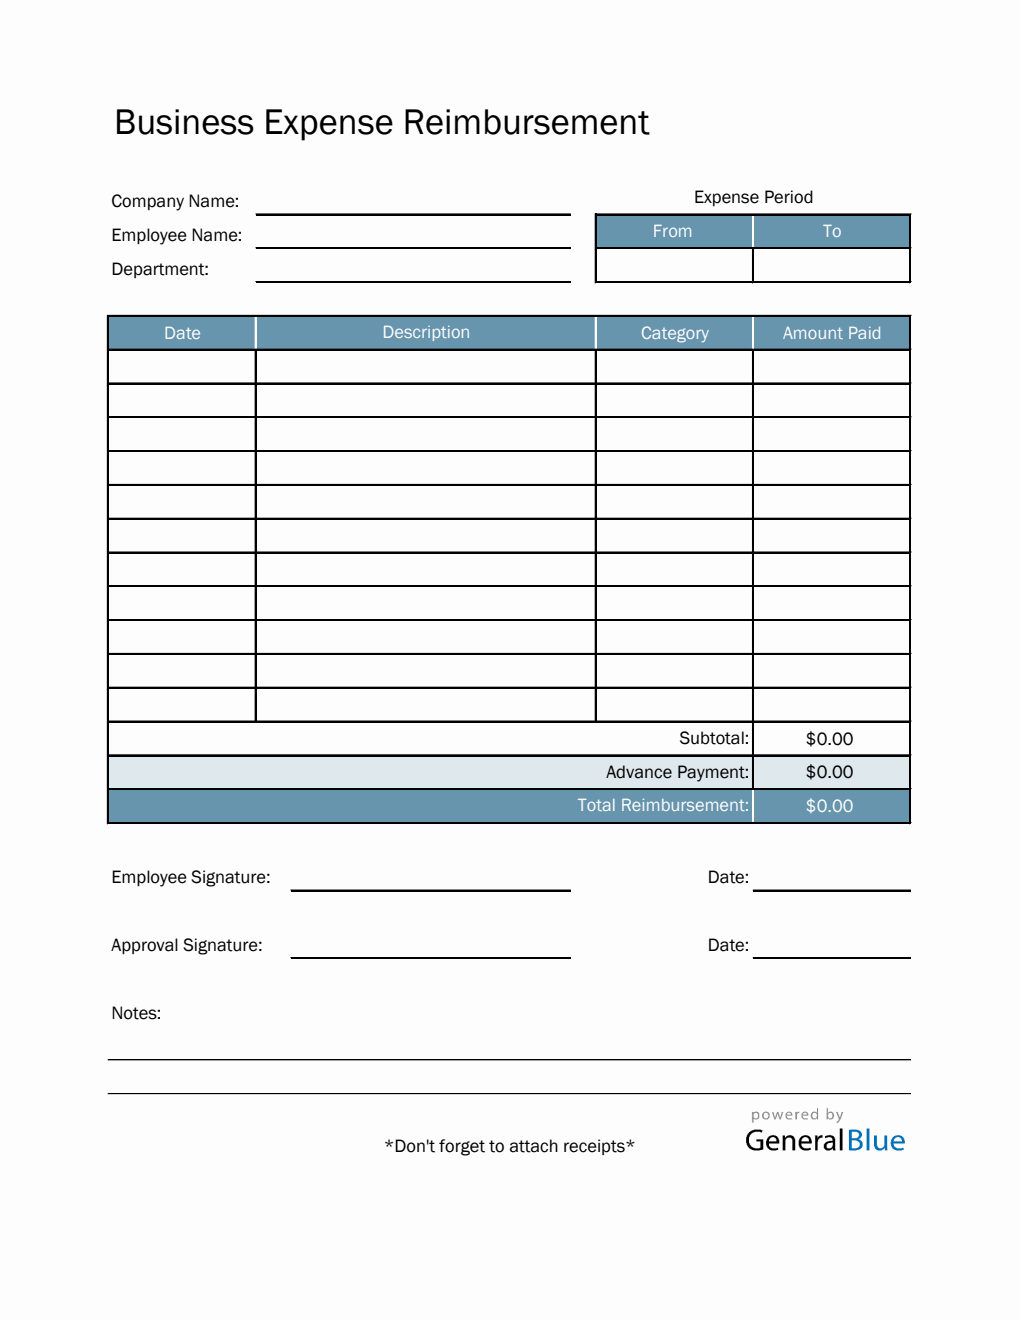 Business Expense Reimbursement in Excel (Aqua)